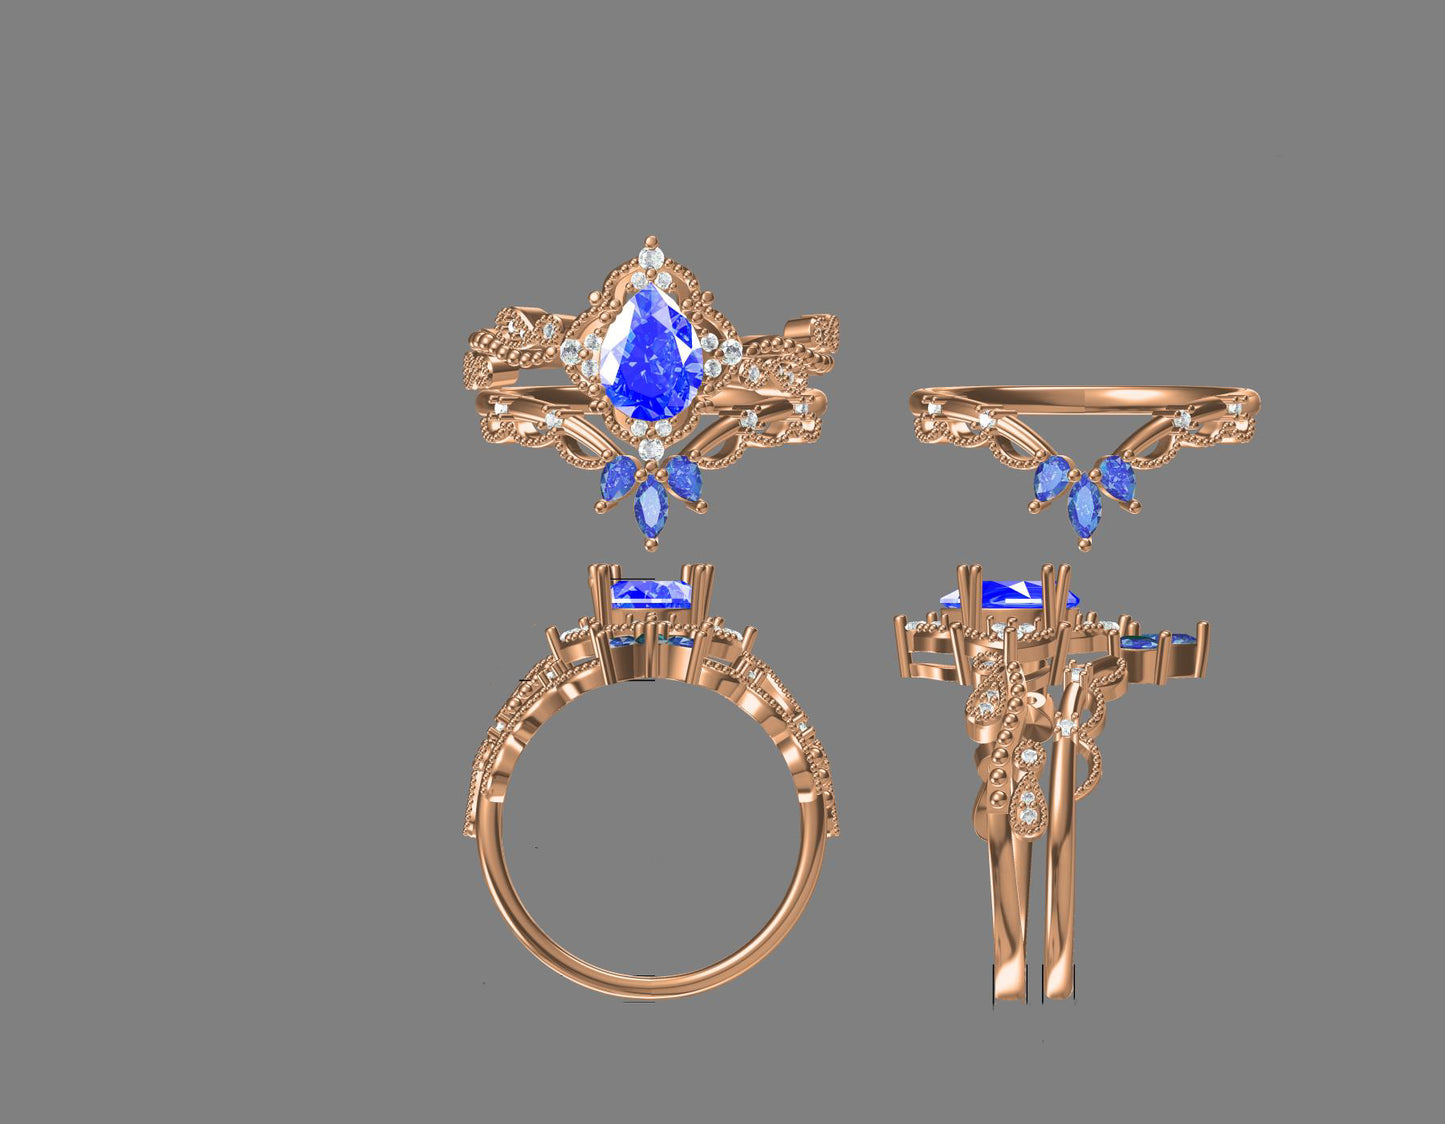 Custom Ring - Pear Cut Alexandrite Ring Set